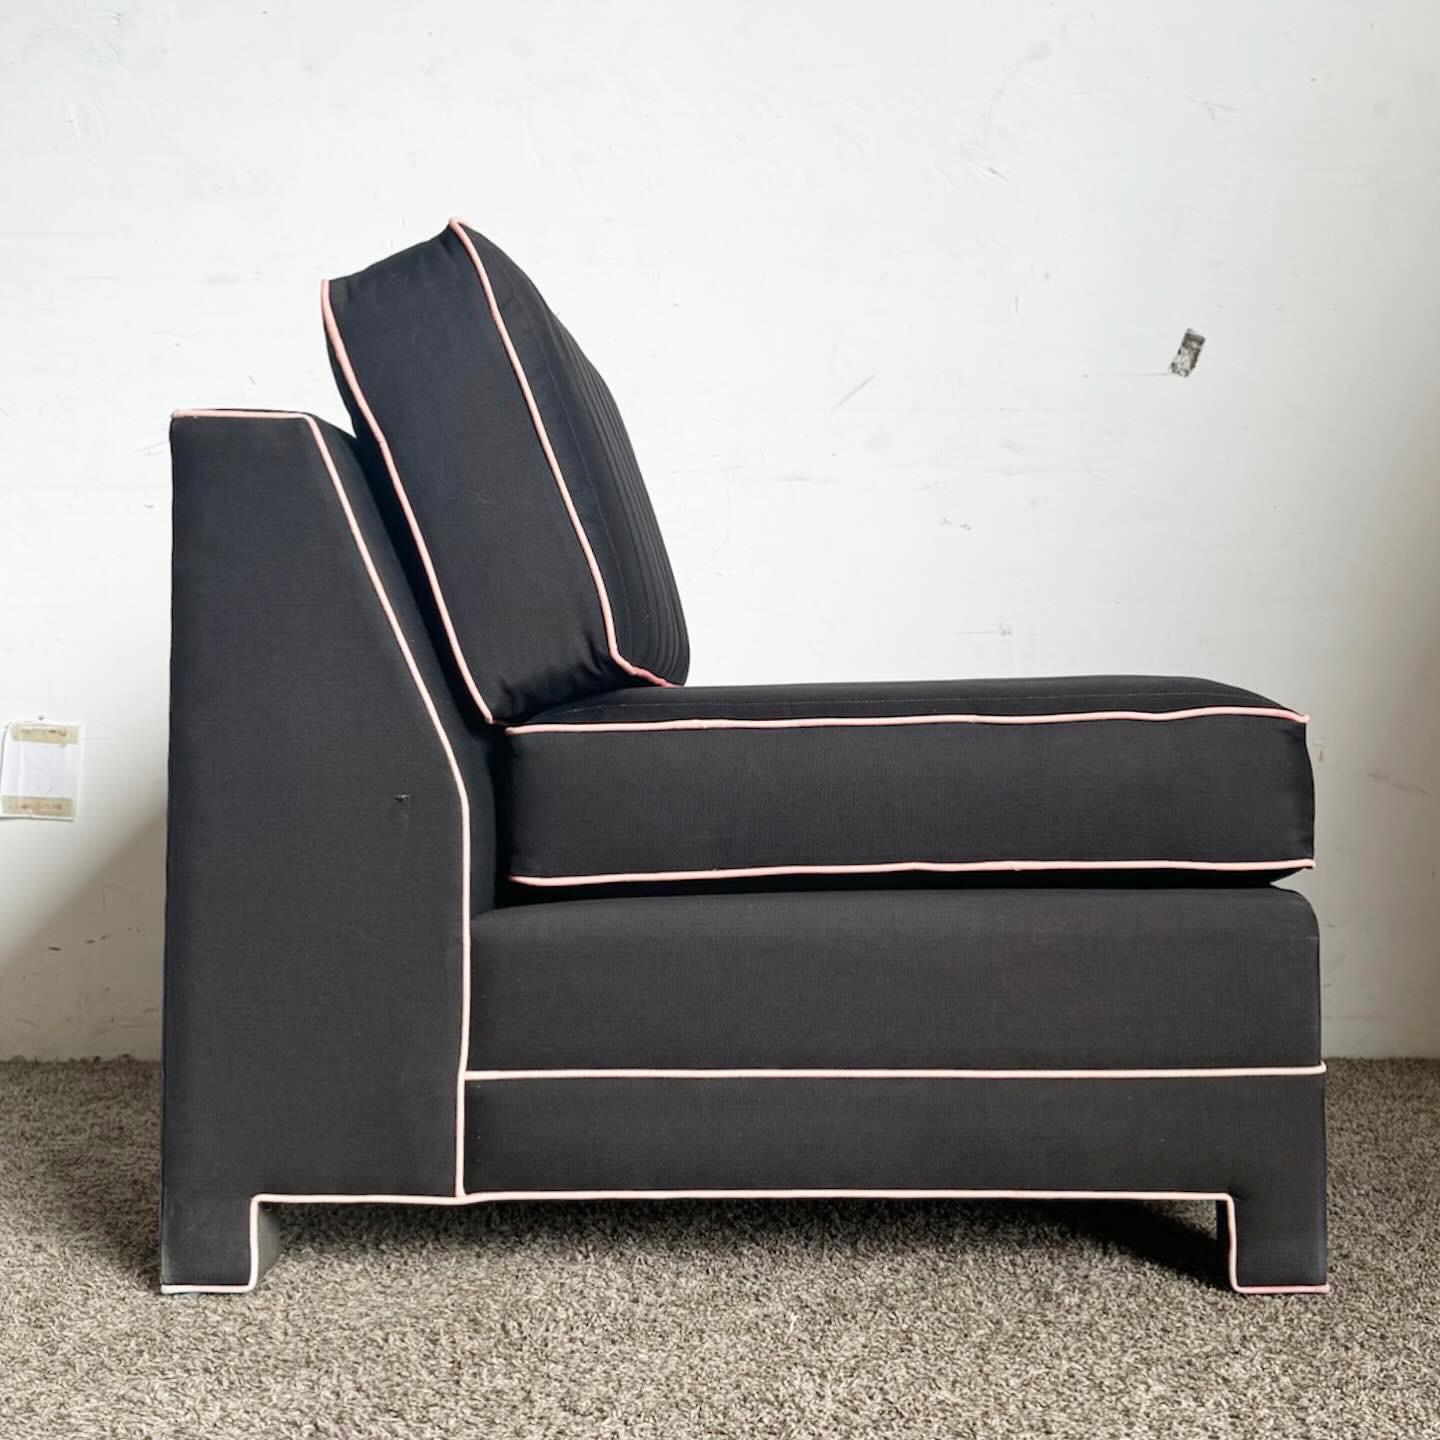 Entdecken Sie den Postmodern Black and Pink Sofa Lounge Chair, eine kühne Fusion aus schwarzer Polsterung und schickem verblasstem rosa Keder. Das auffällige Design und der Farbkontrast dieses Stuhls machen ihn zu einem herausragenden Stück für jede